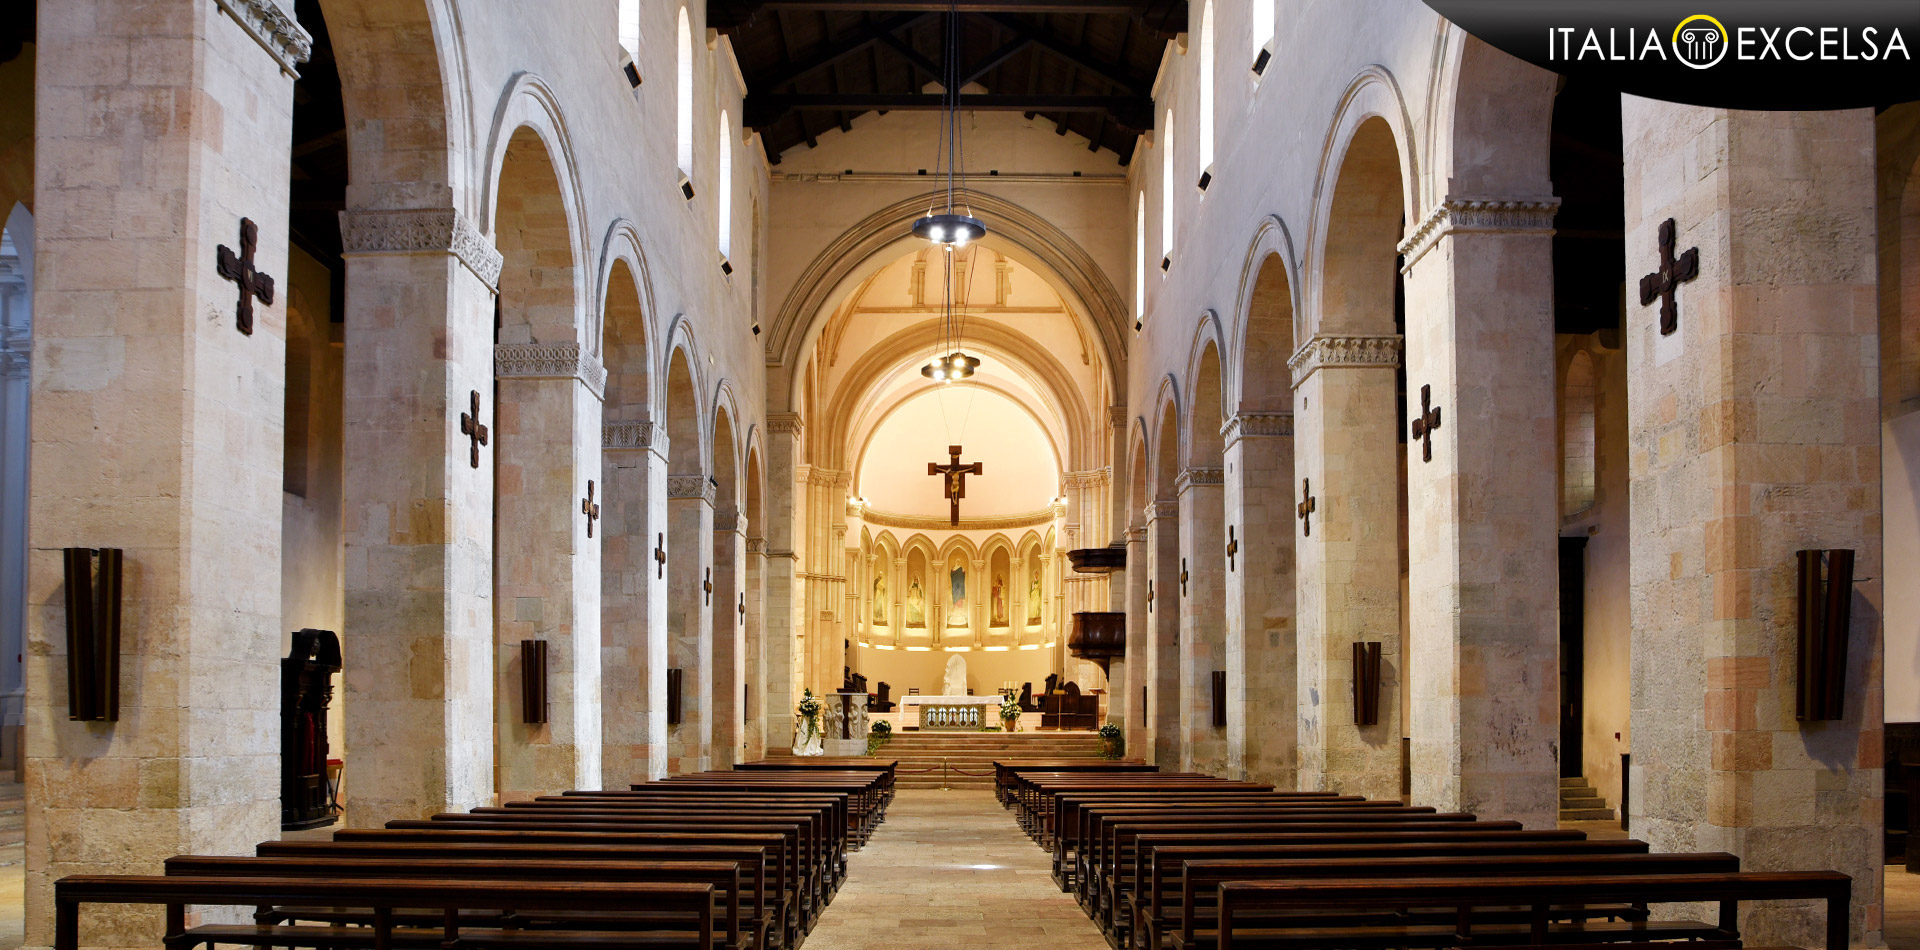 Metaverso Cosenza - Cattedrale Cosenza 800 anni